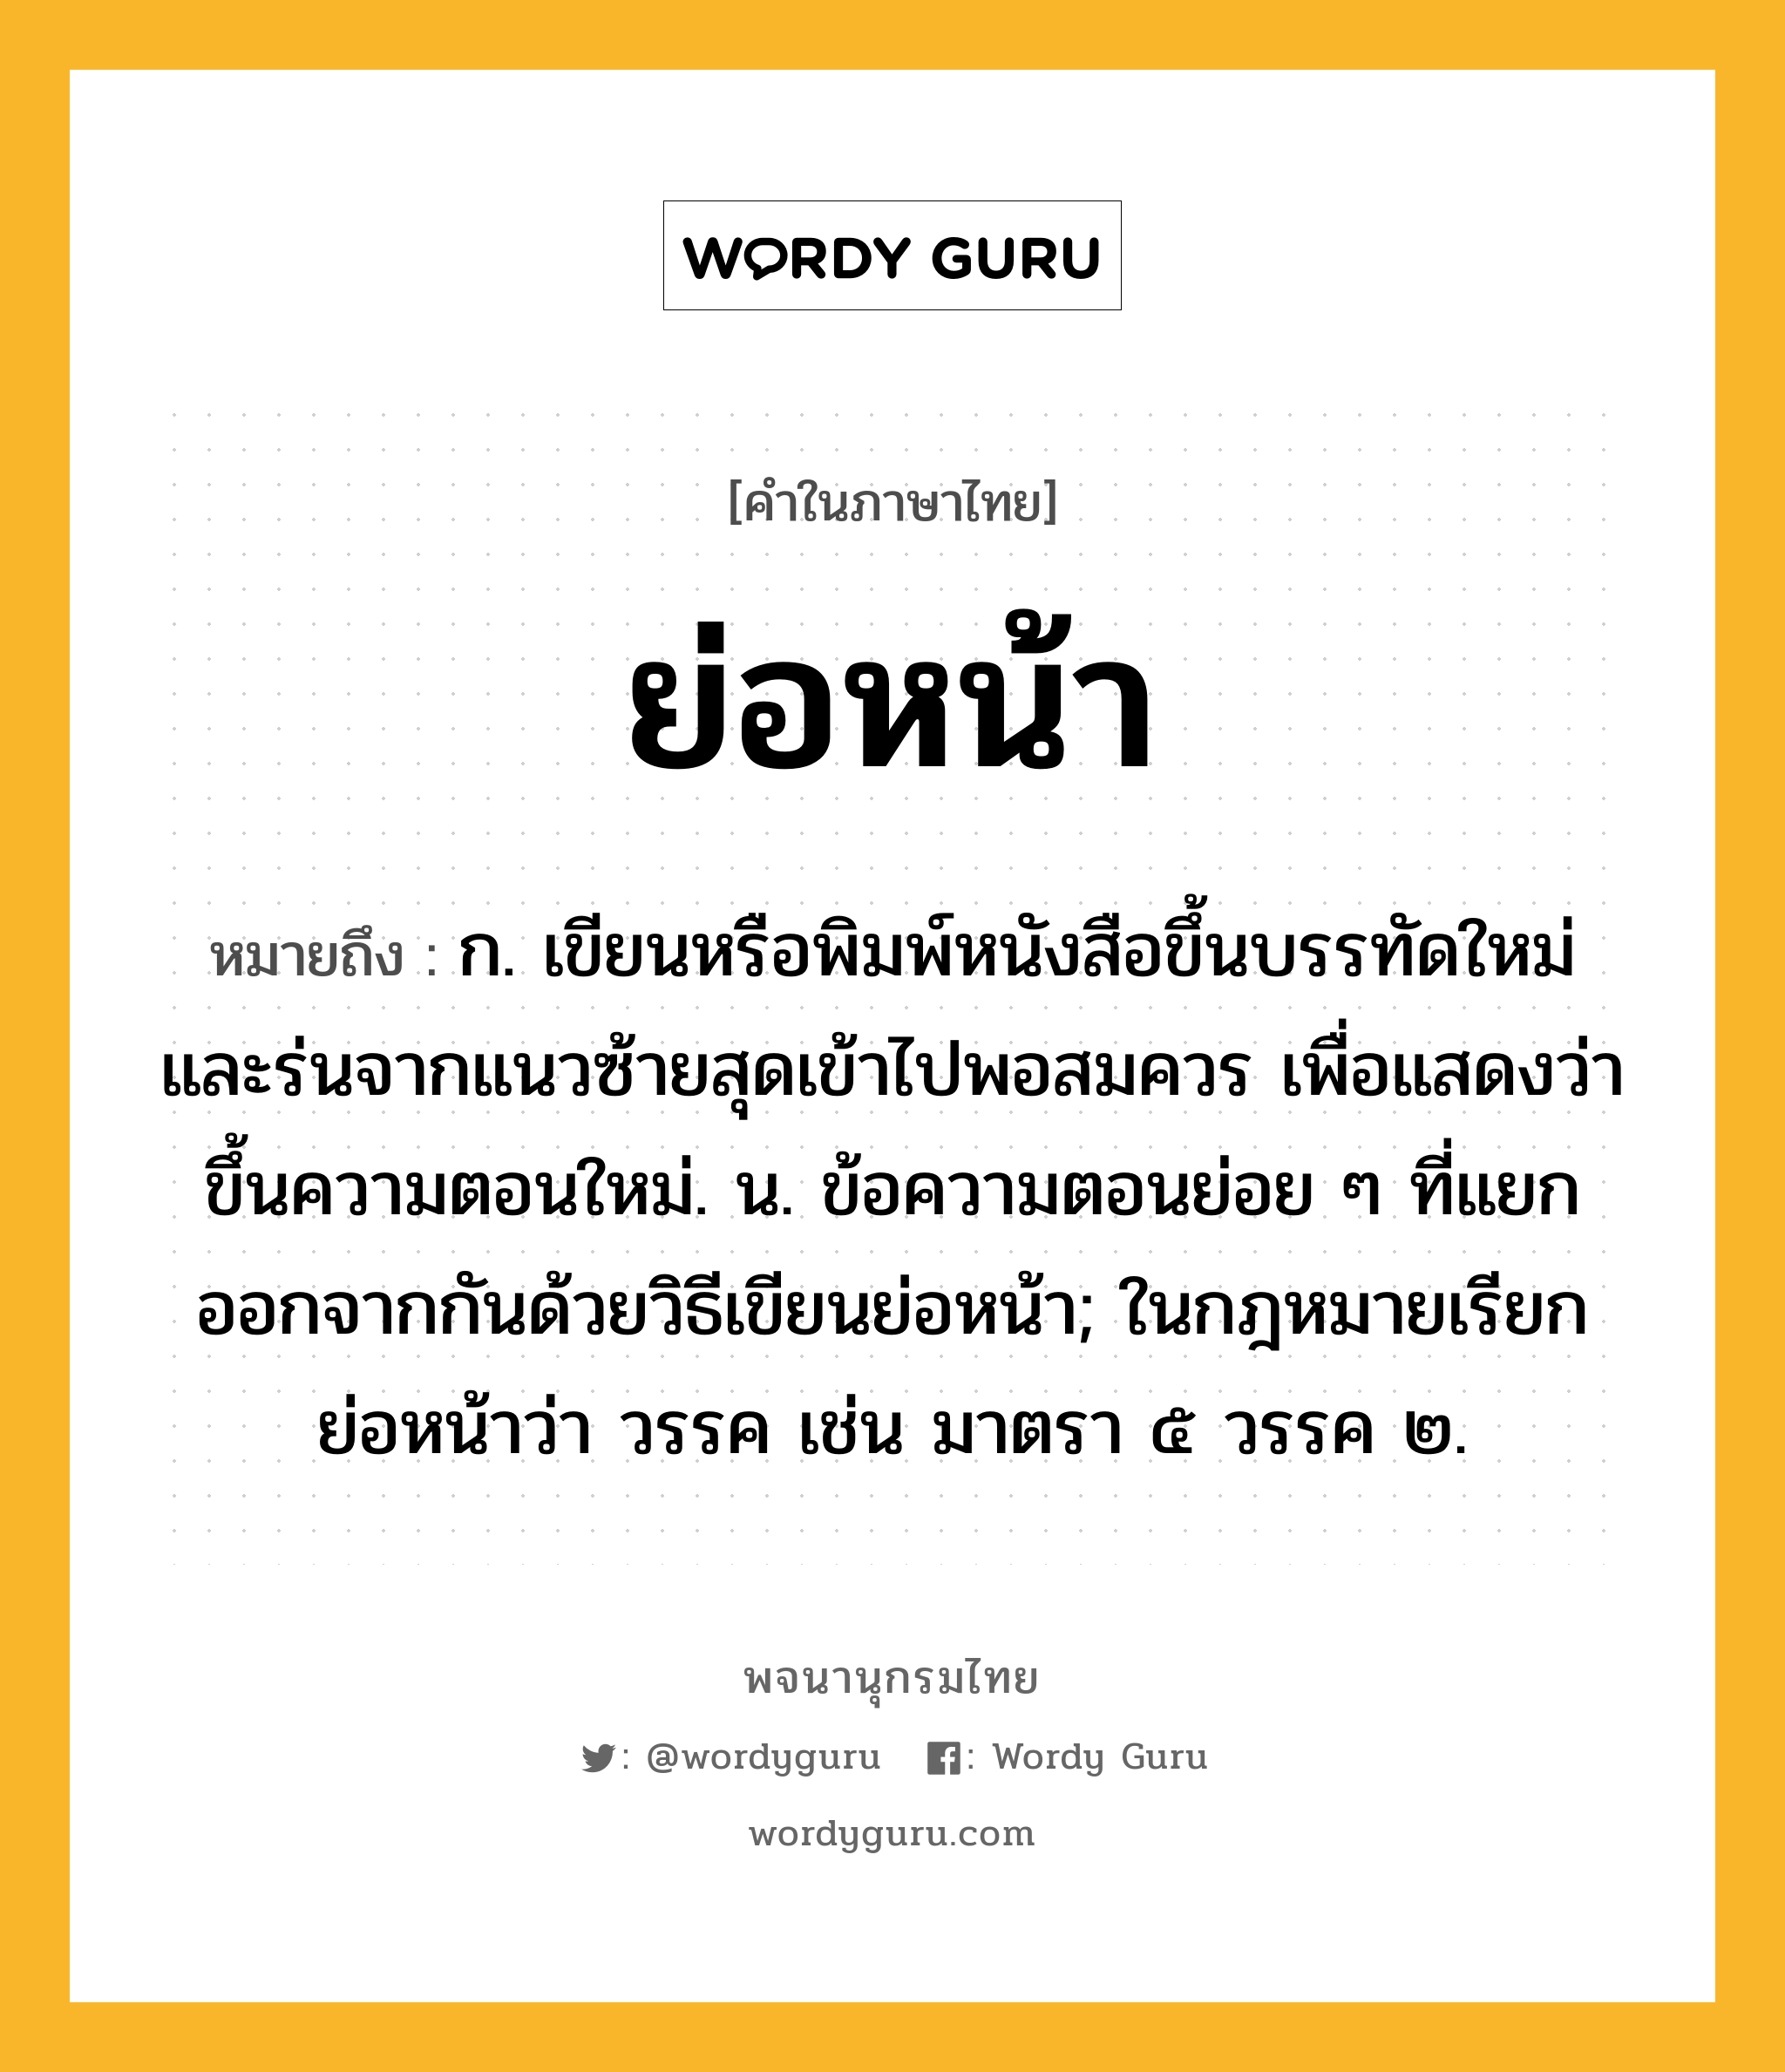 ย่อหน้า ความหมาย หมายถึงอะไร?, คำในภาษาไทย ย่อหน้า หมายถึง ก. เขียนหรือพิมพ์หนังสือขึ้นบรรทัดใหม่และร่นจากแนวซ้ายสุดเข้าไปพอสมควร เพื่อแสดงว่าขึ้นความตอนใหม่. น. ข้อความตอนย่อย ๆ ที่แยกออกจากกันด้วยวิธีเขียนย่อหน้า; ในกฎหมายเรียกย่อหน้าว่า วรรค เช่น มาตรา ๕ วรรค ๒.